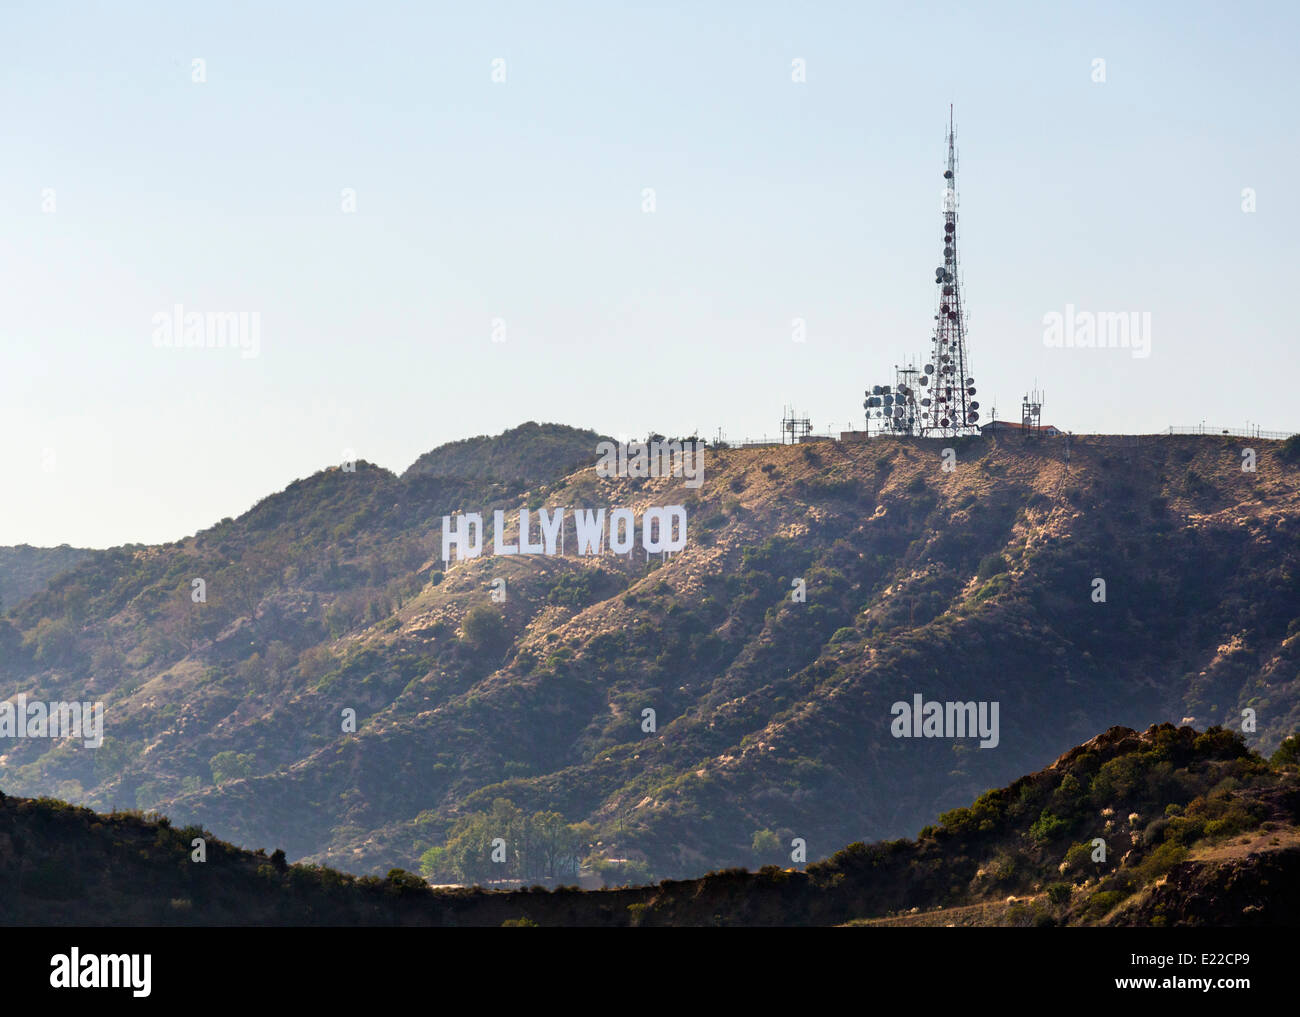 El letrero de Hollywood desde el Parque Griffith, Monte Hollywood, Los Ángeles, California, Estados Unidos. Foto de stock